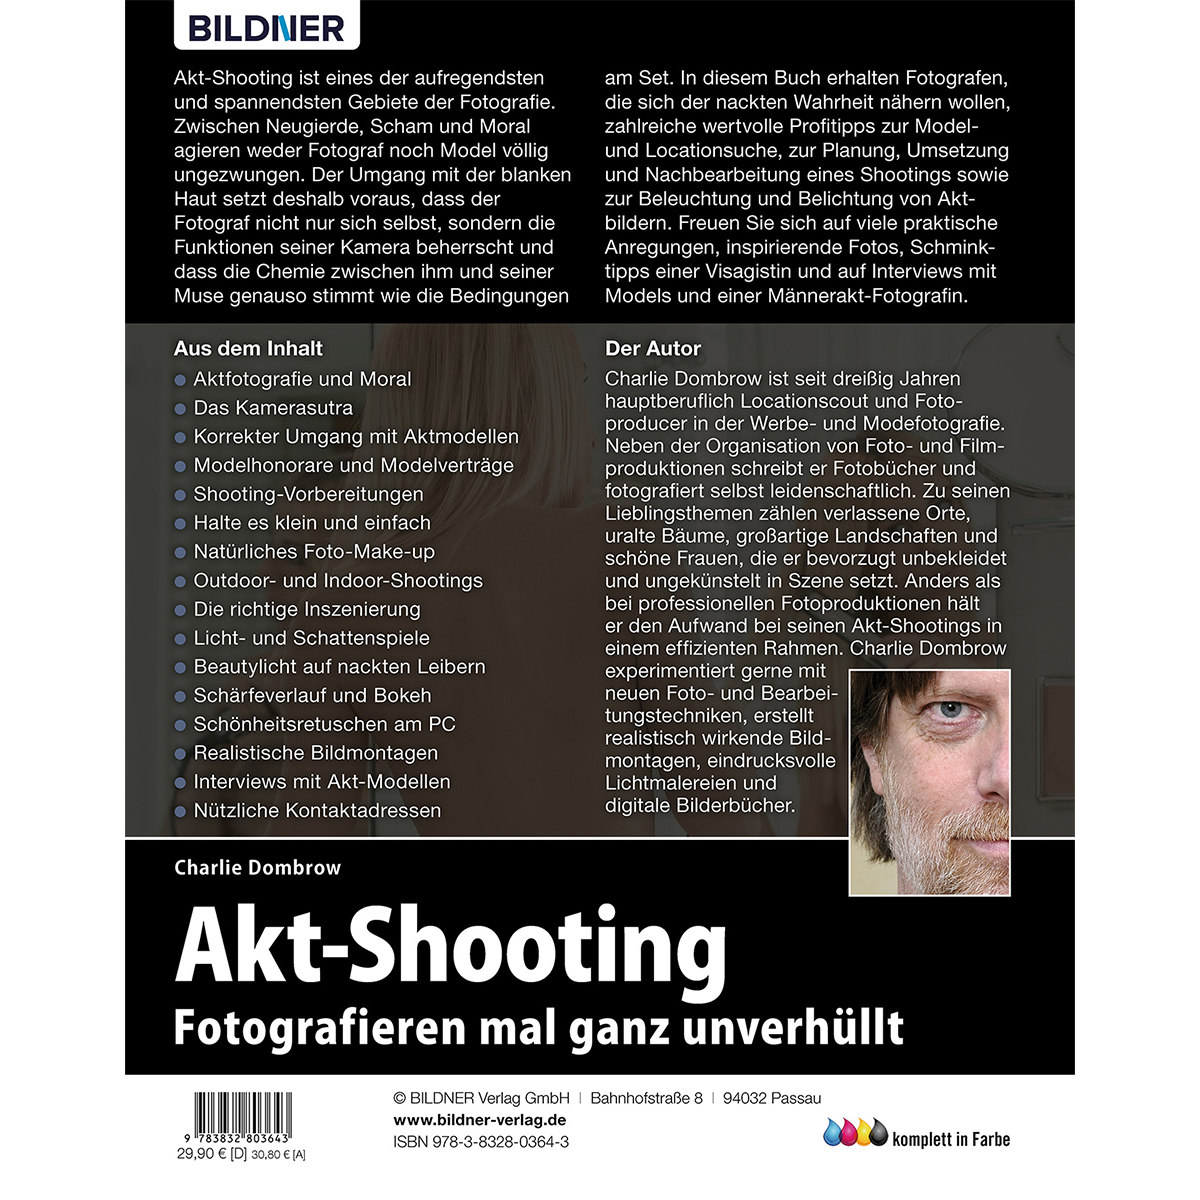 Akt-Shooting: Fotografieren mal ganz unverhüllt